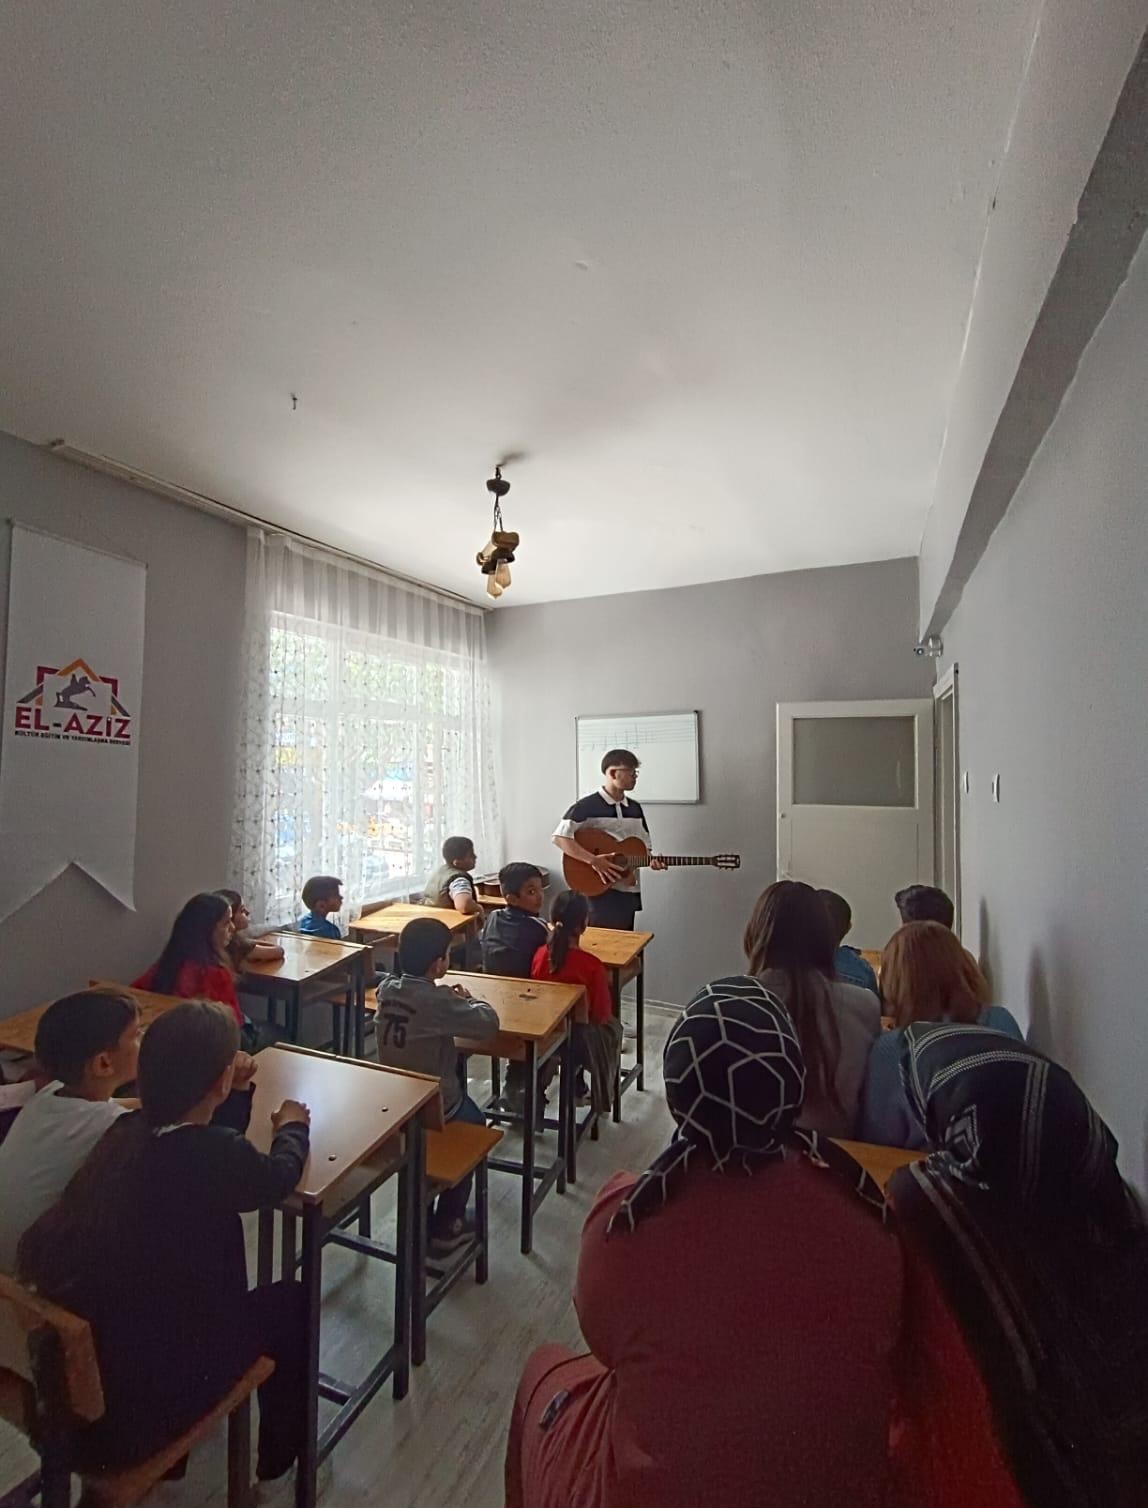 El-aziz Kültür Eğitim ve Yardımlaşma Derneğinden ücretsiz enstrüman kursu
